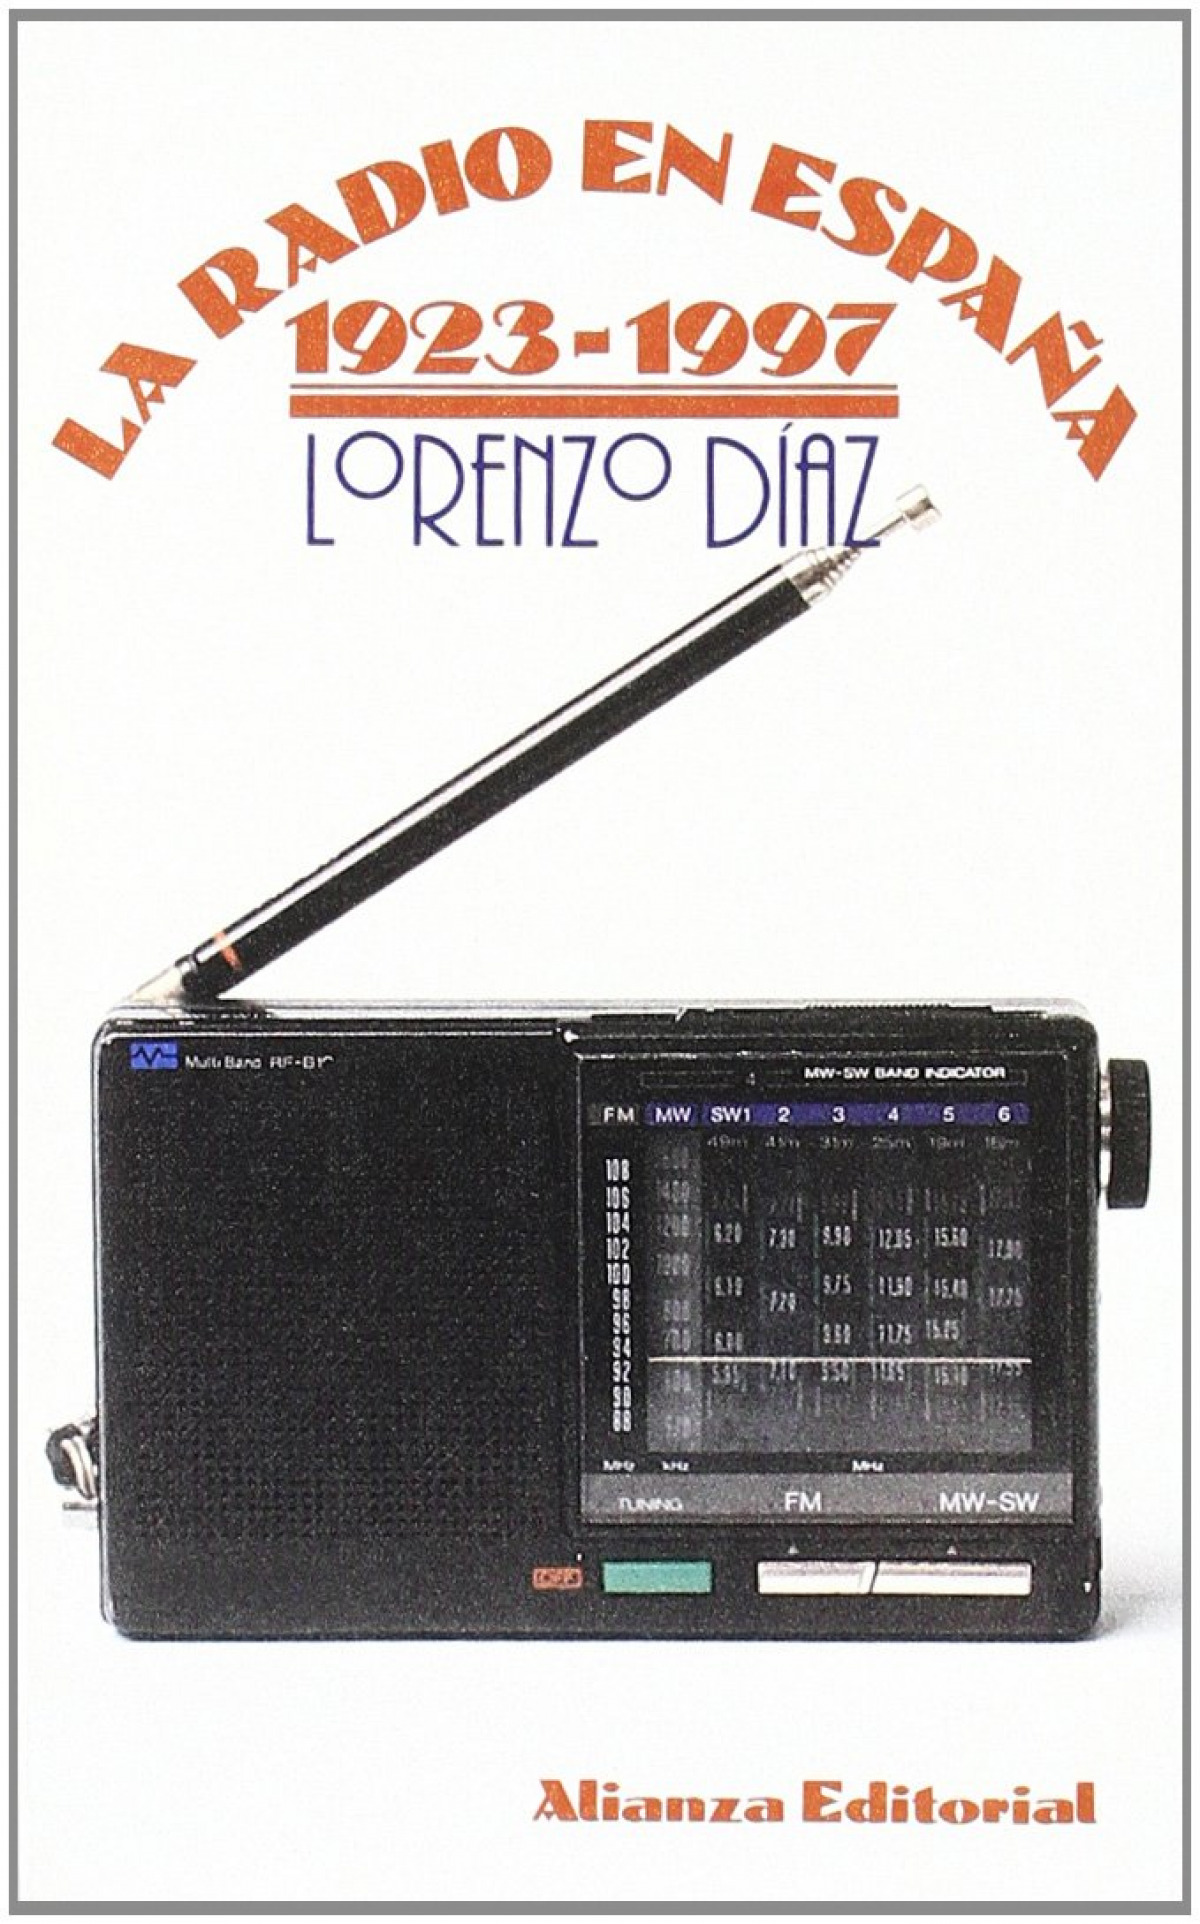 La radio en España 1923-1997 - Díaz, Lorenzo